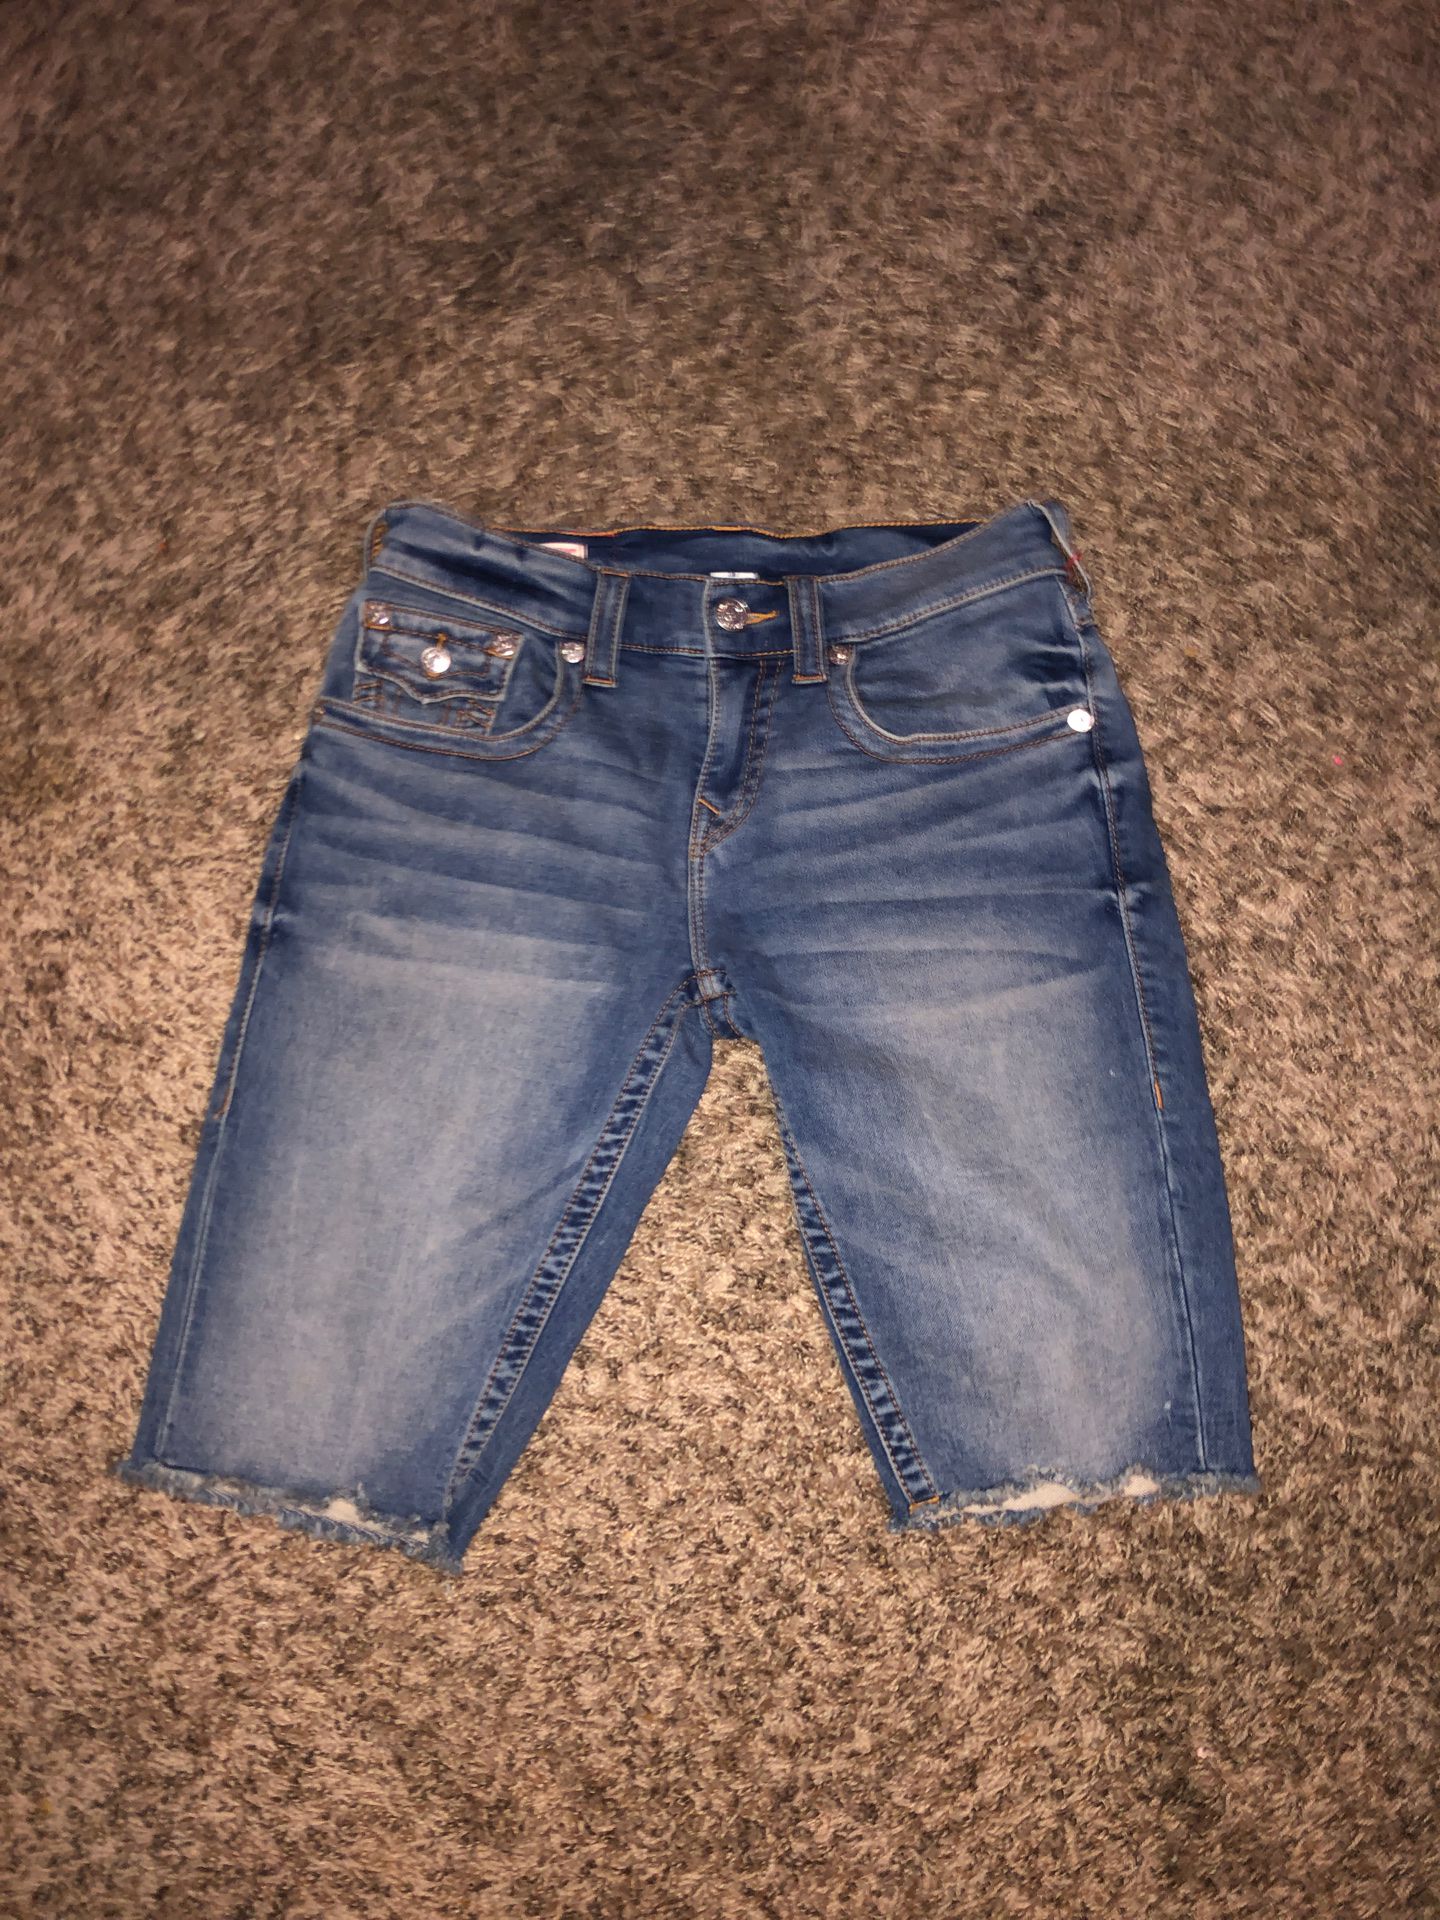 True religion Jean shorts (RICKY) shorts men size 28